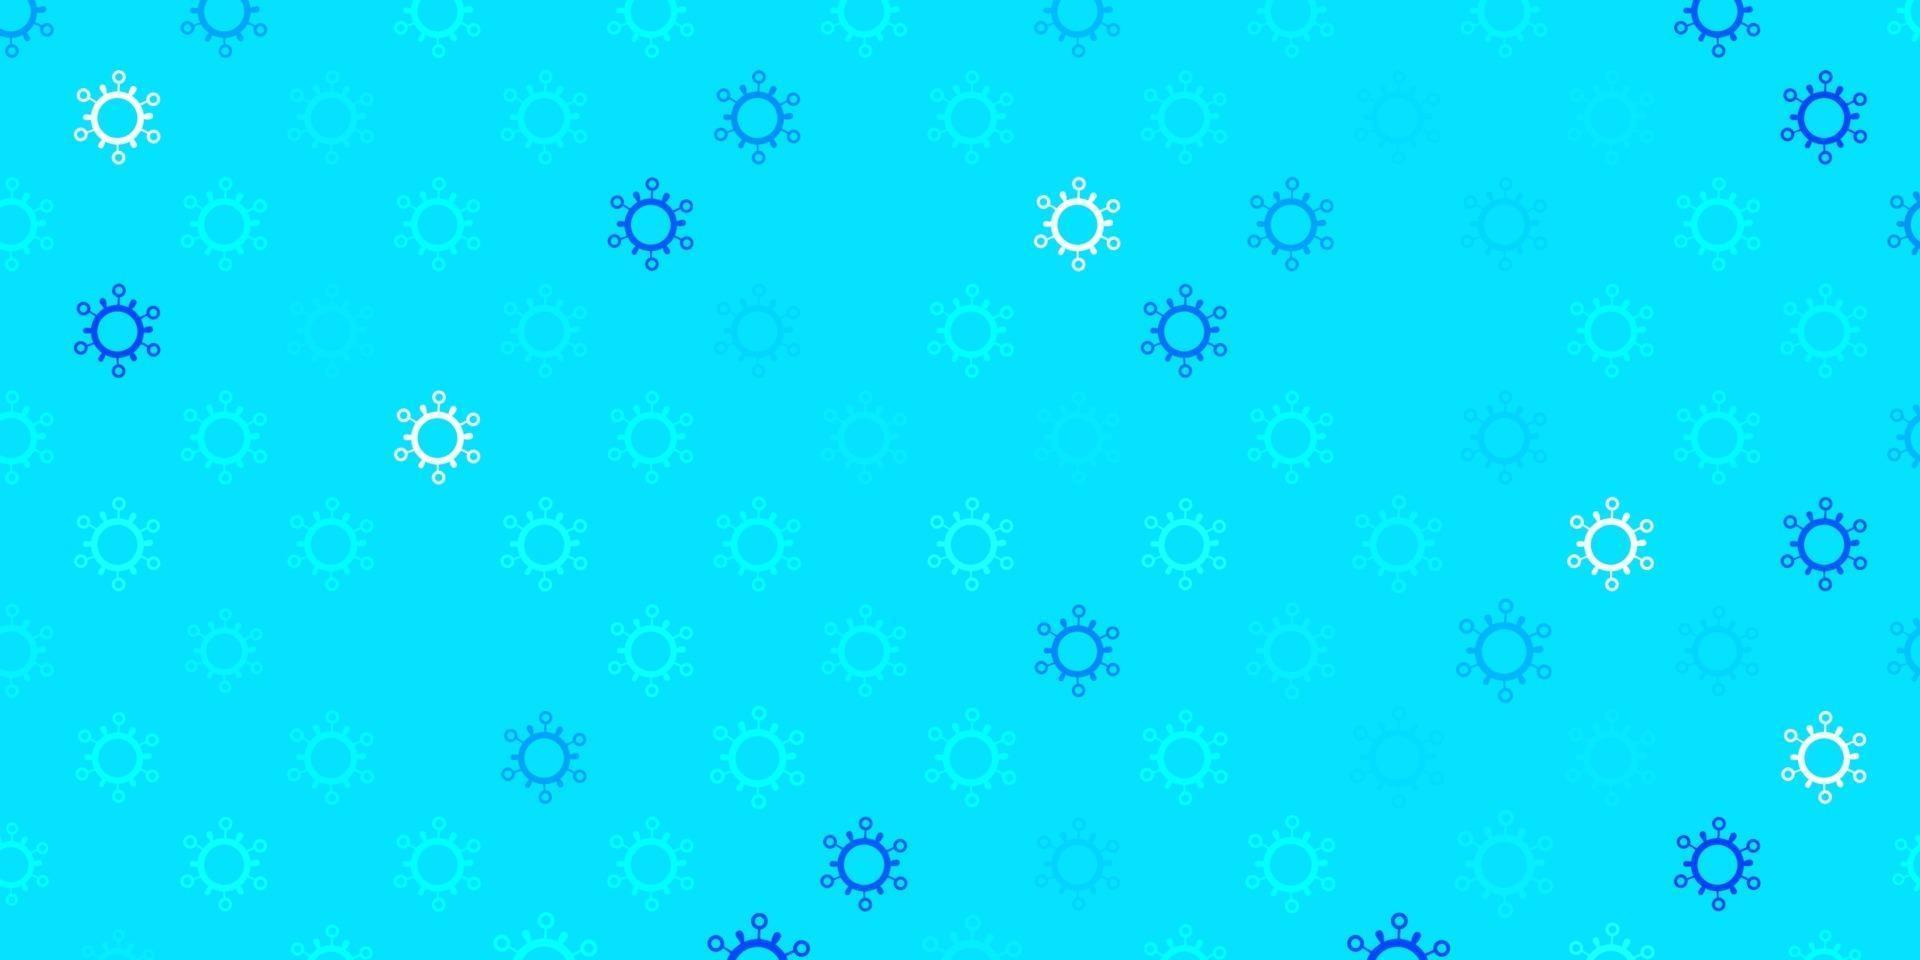 sfondo vettoriale azzurro con simboli di virus.